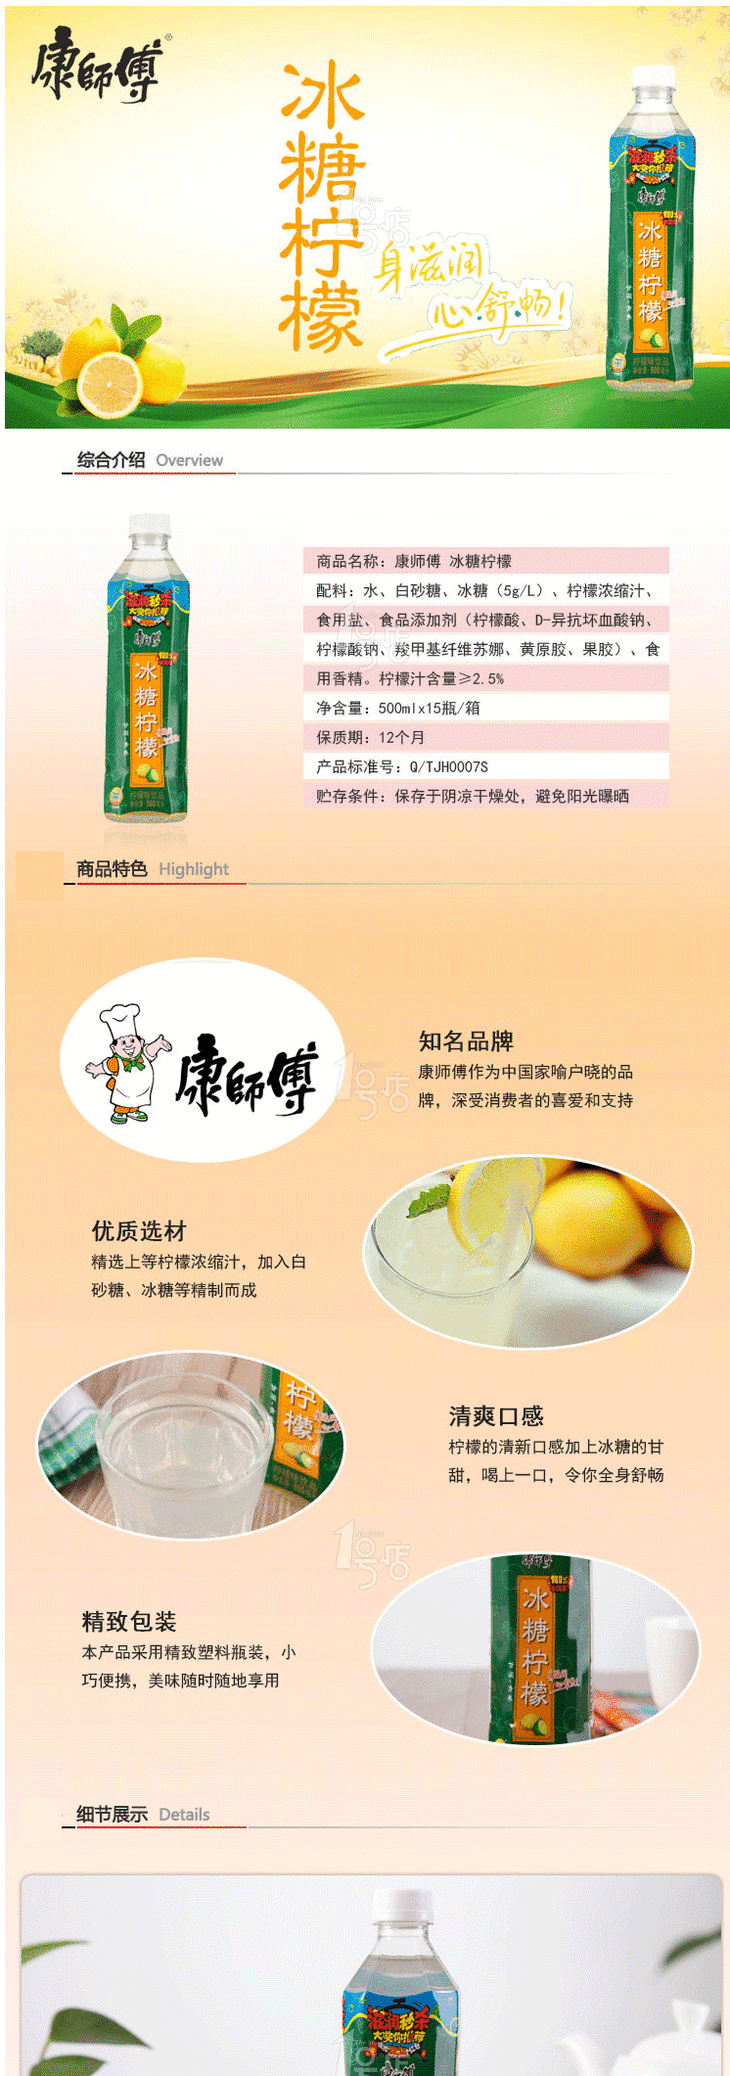 康师傅 冰糖柠檬 500ml15瓶 整箱(测试)